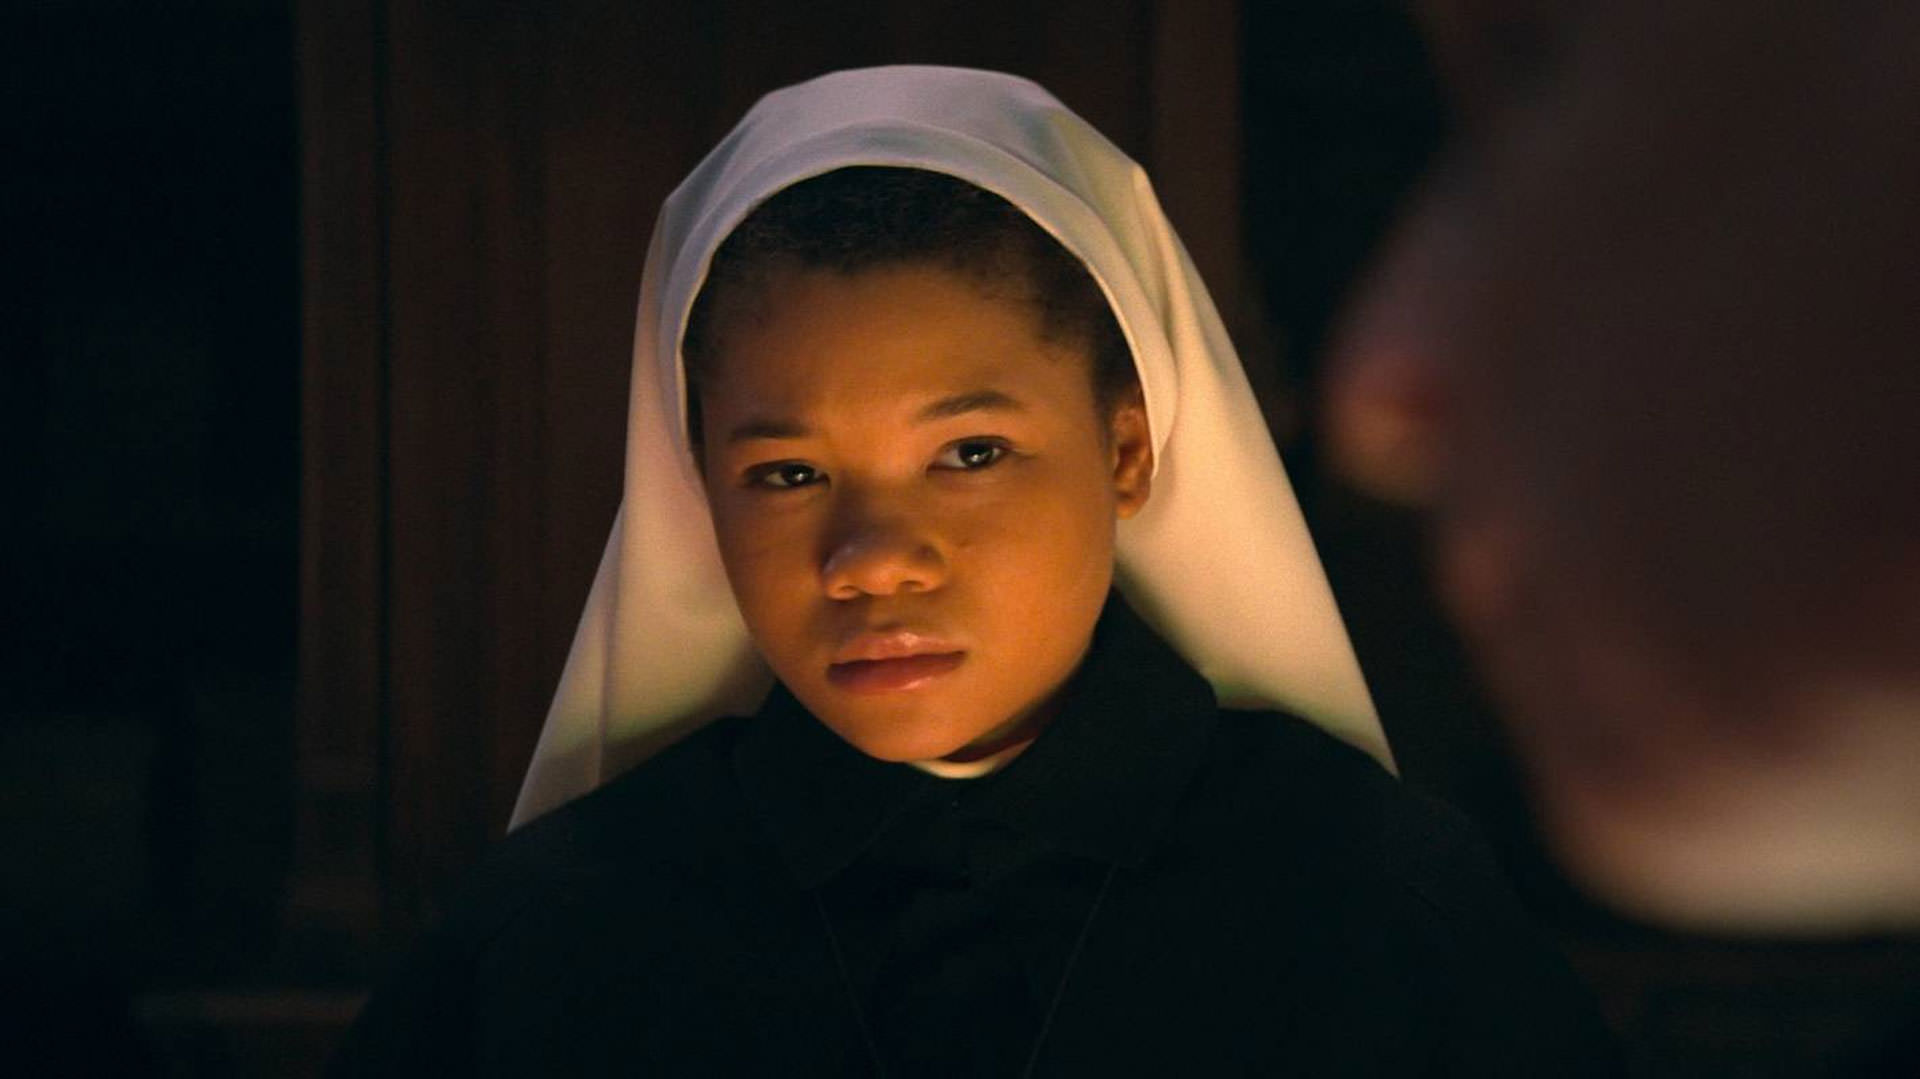 استورم رید در نقش یک راهبه در فیلم راهبه ۲ به کارگردانی مایکل چاوز